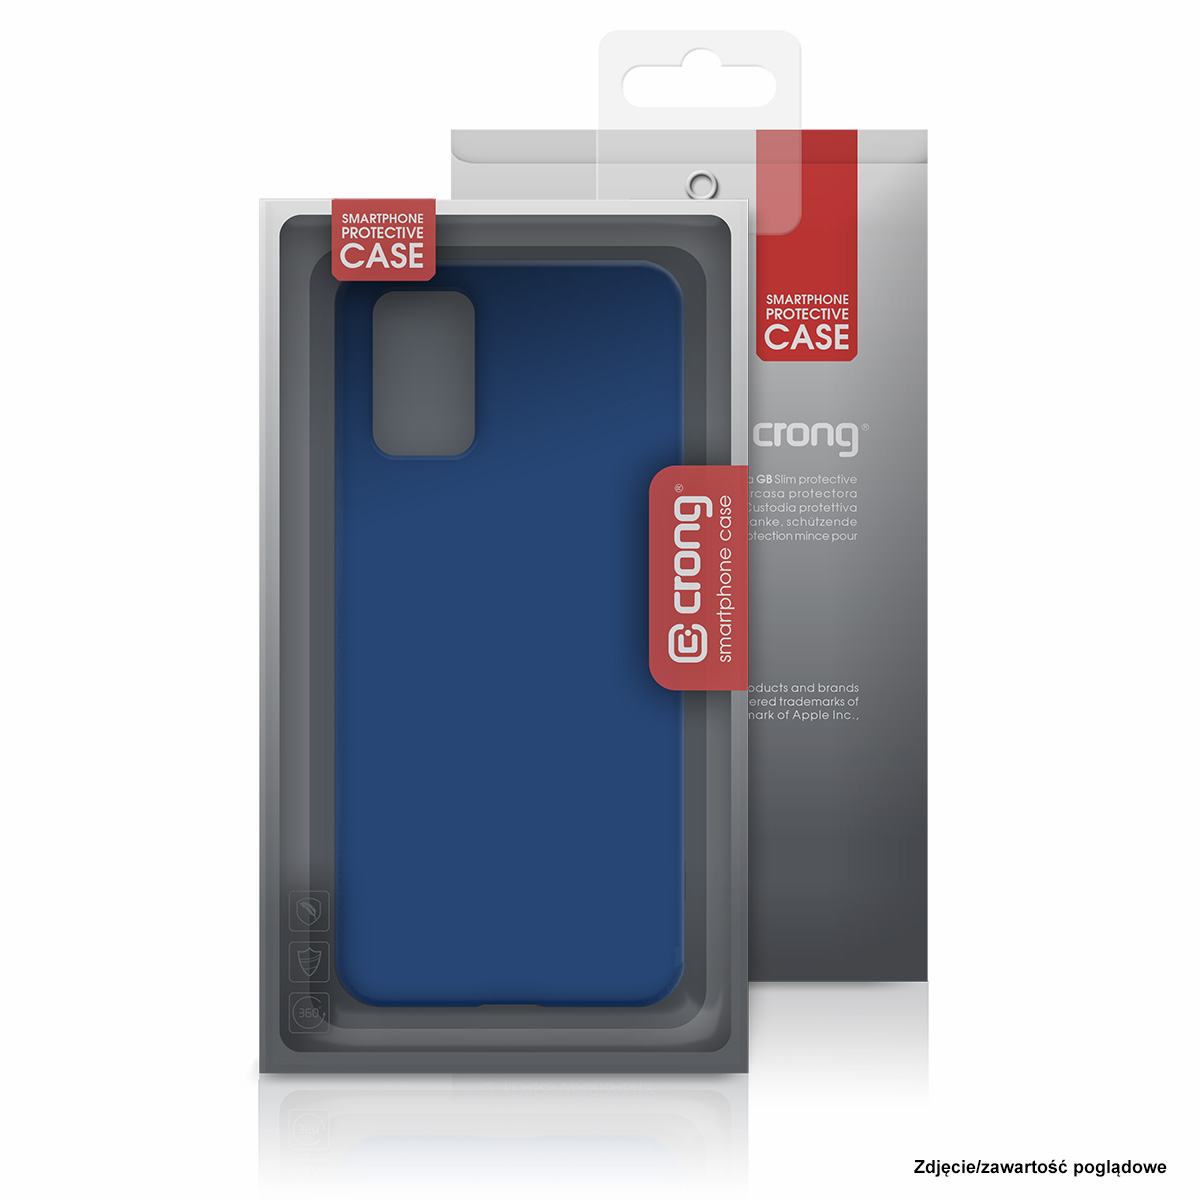 Crong Defender Case - Etui Samsung Galaxy S20 Ultra (czarny)